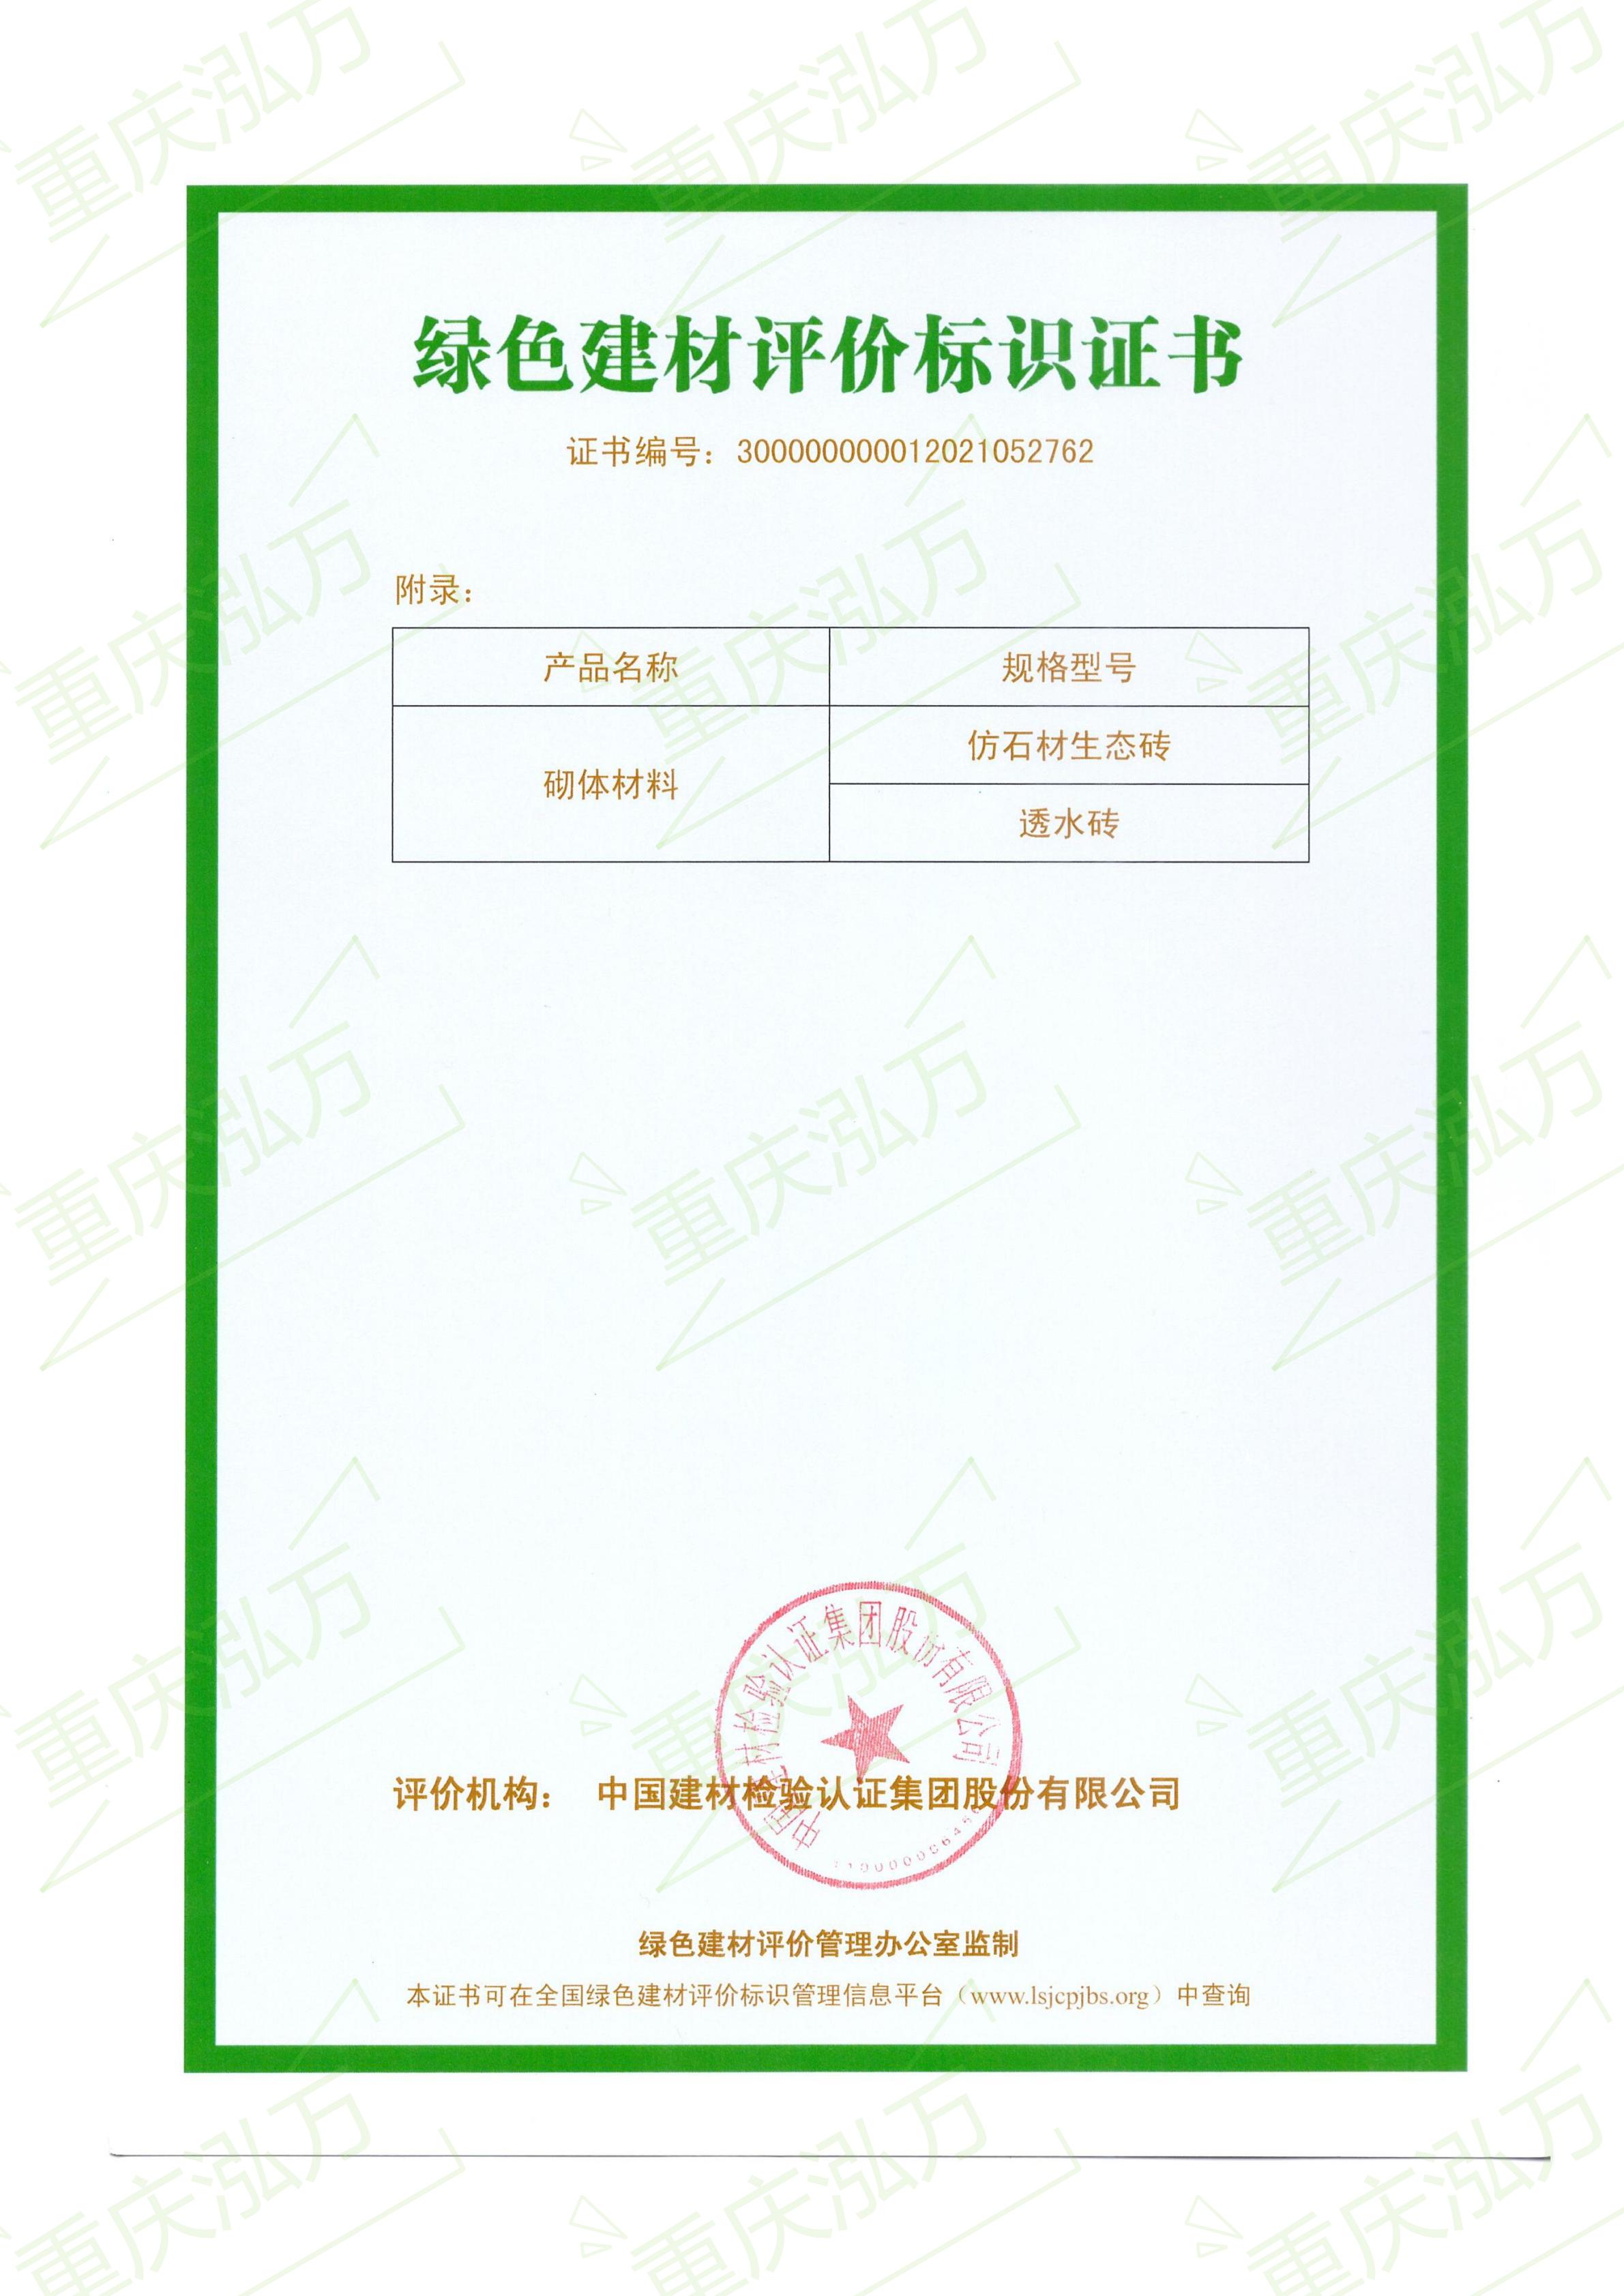 重庆泓万通过绿色建材标识评价三星认证